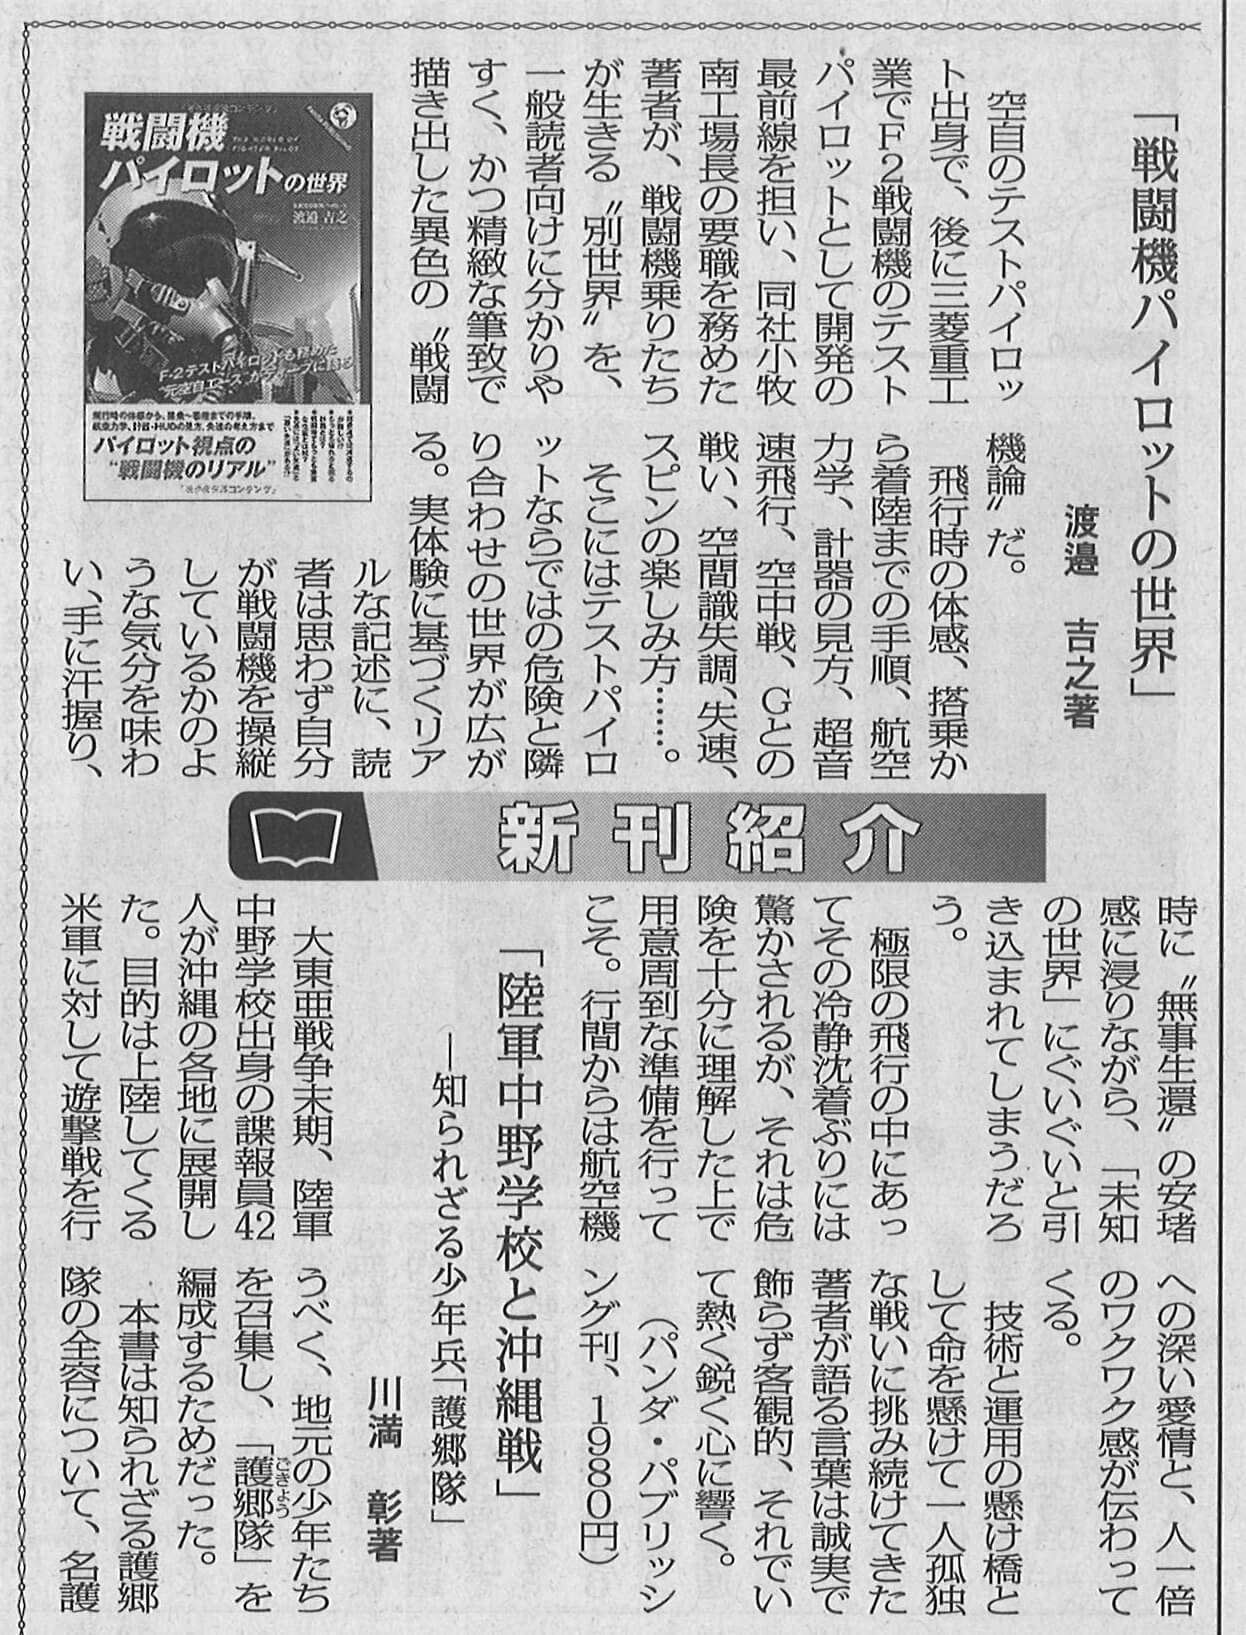 朝雲新聞 18年6月21日 にて 戦闘機パイロットの世界 渡邉吉之 を紹介いただきました